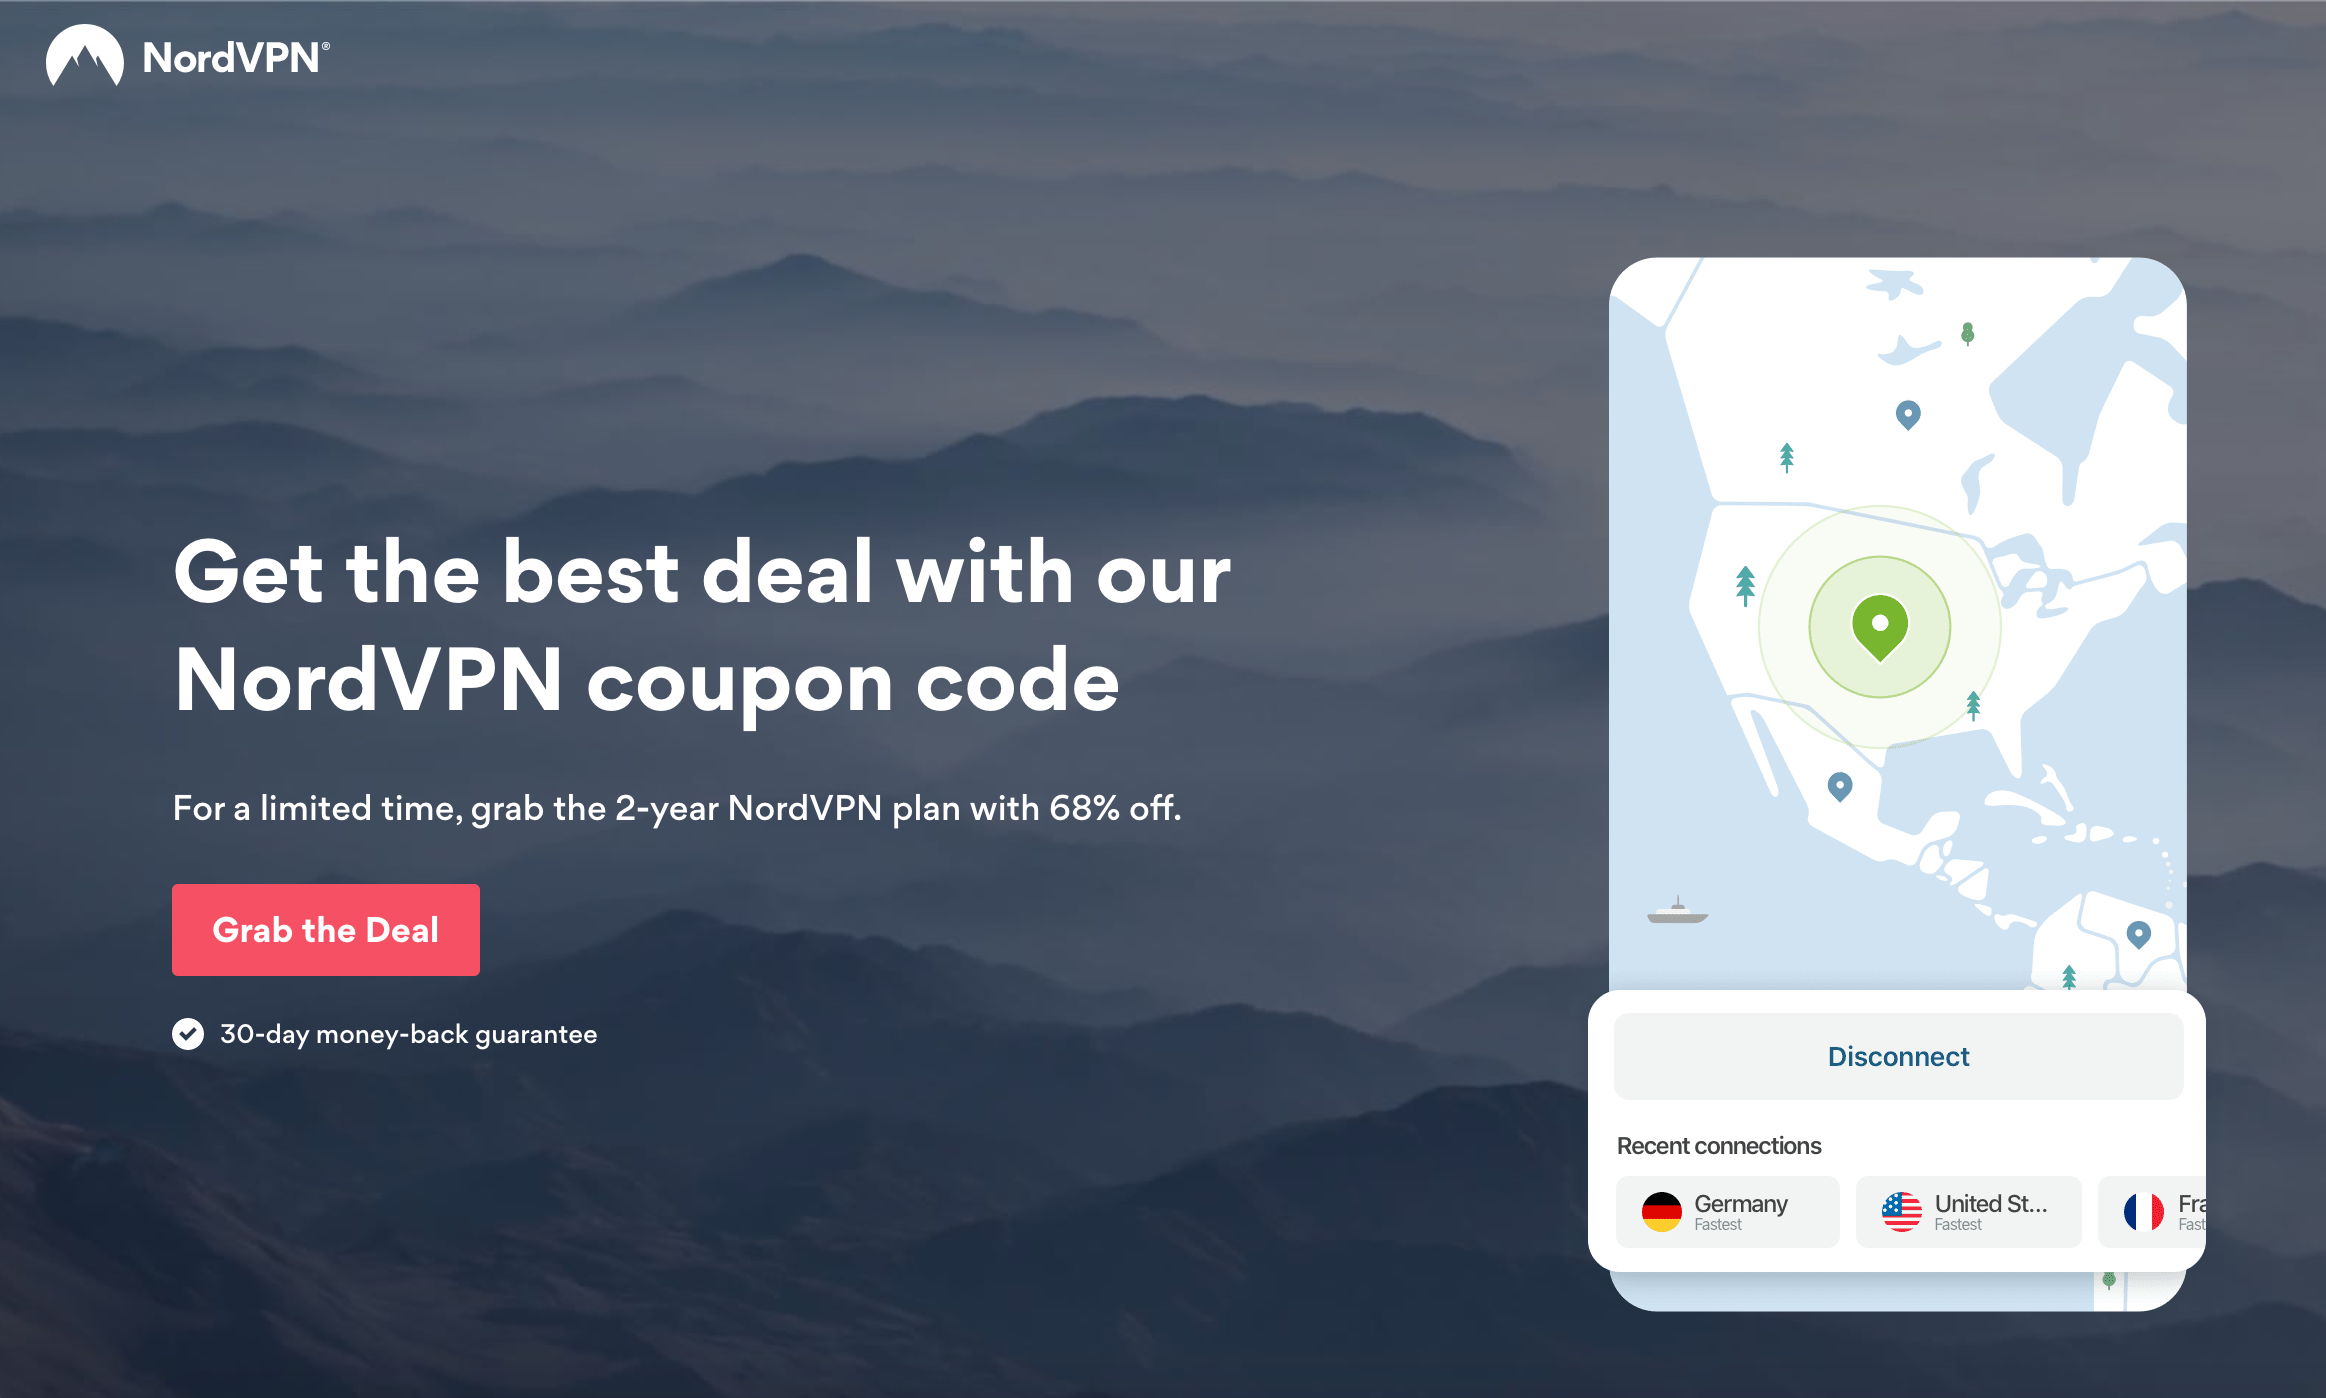 Get the best VPN deal with NordVPN